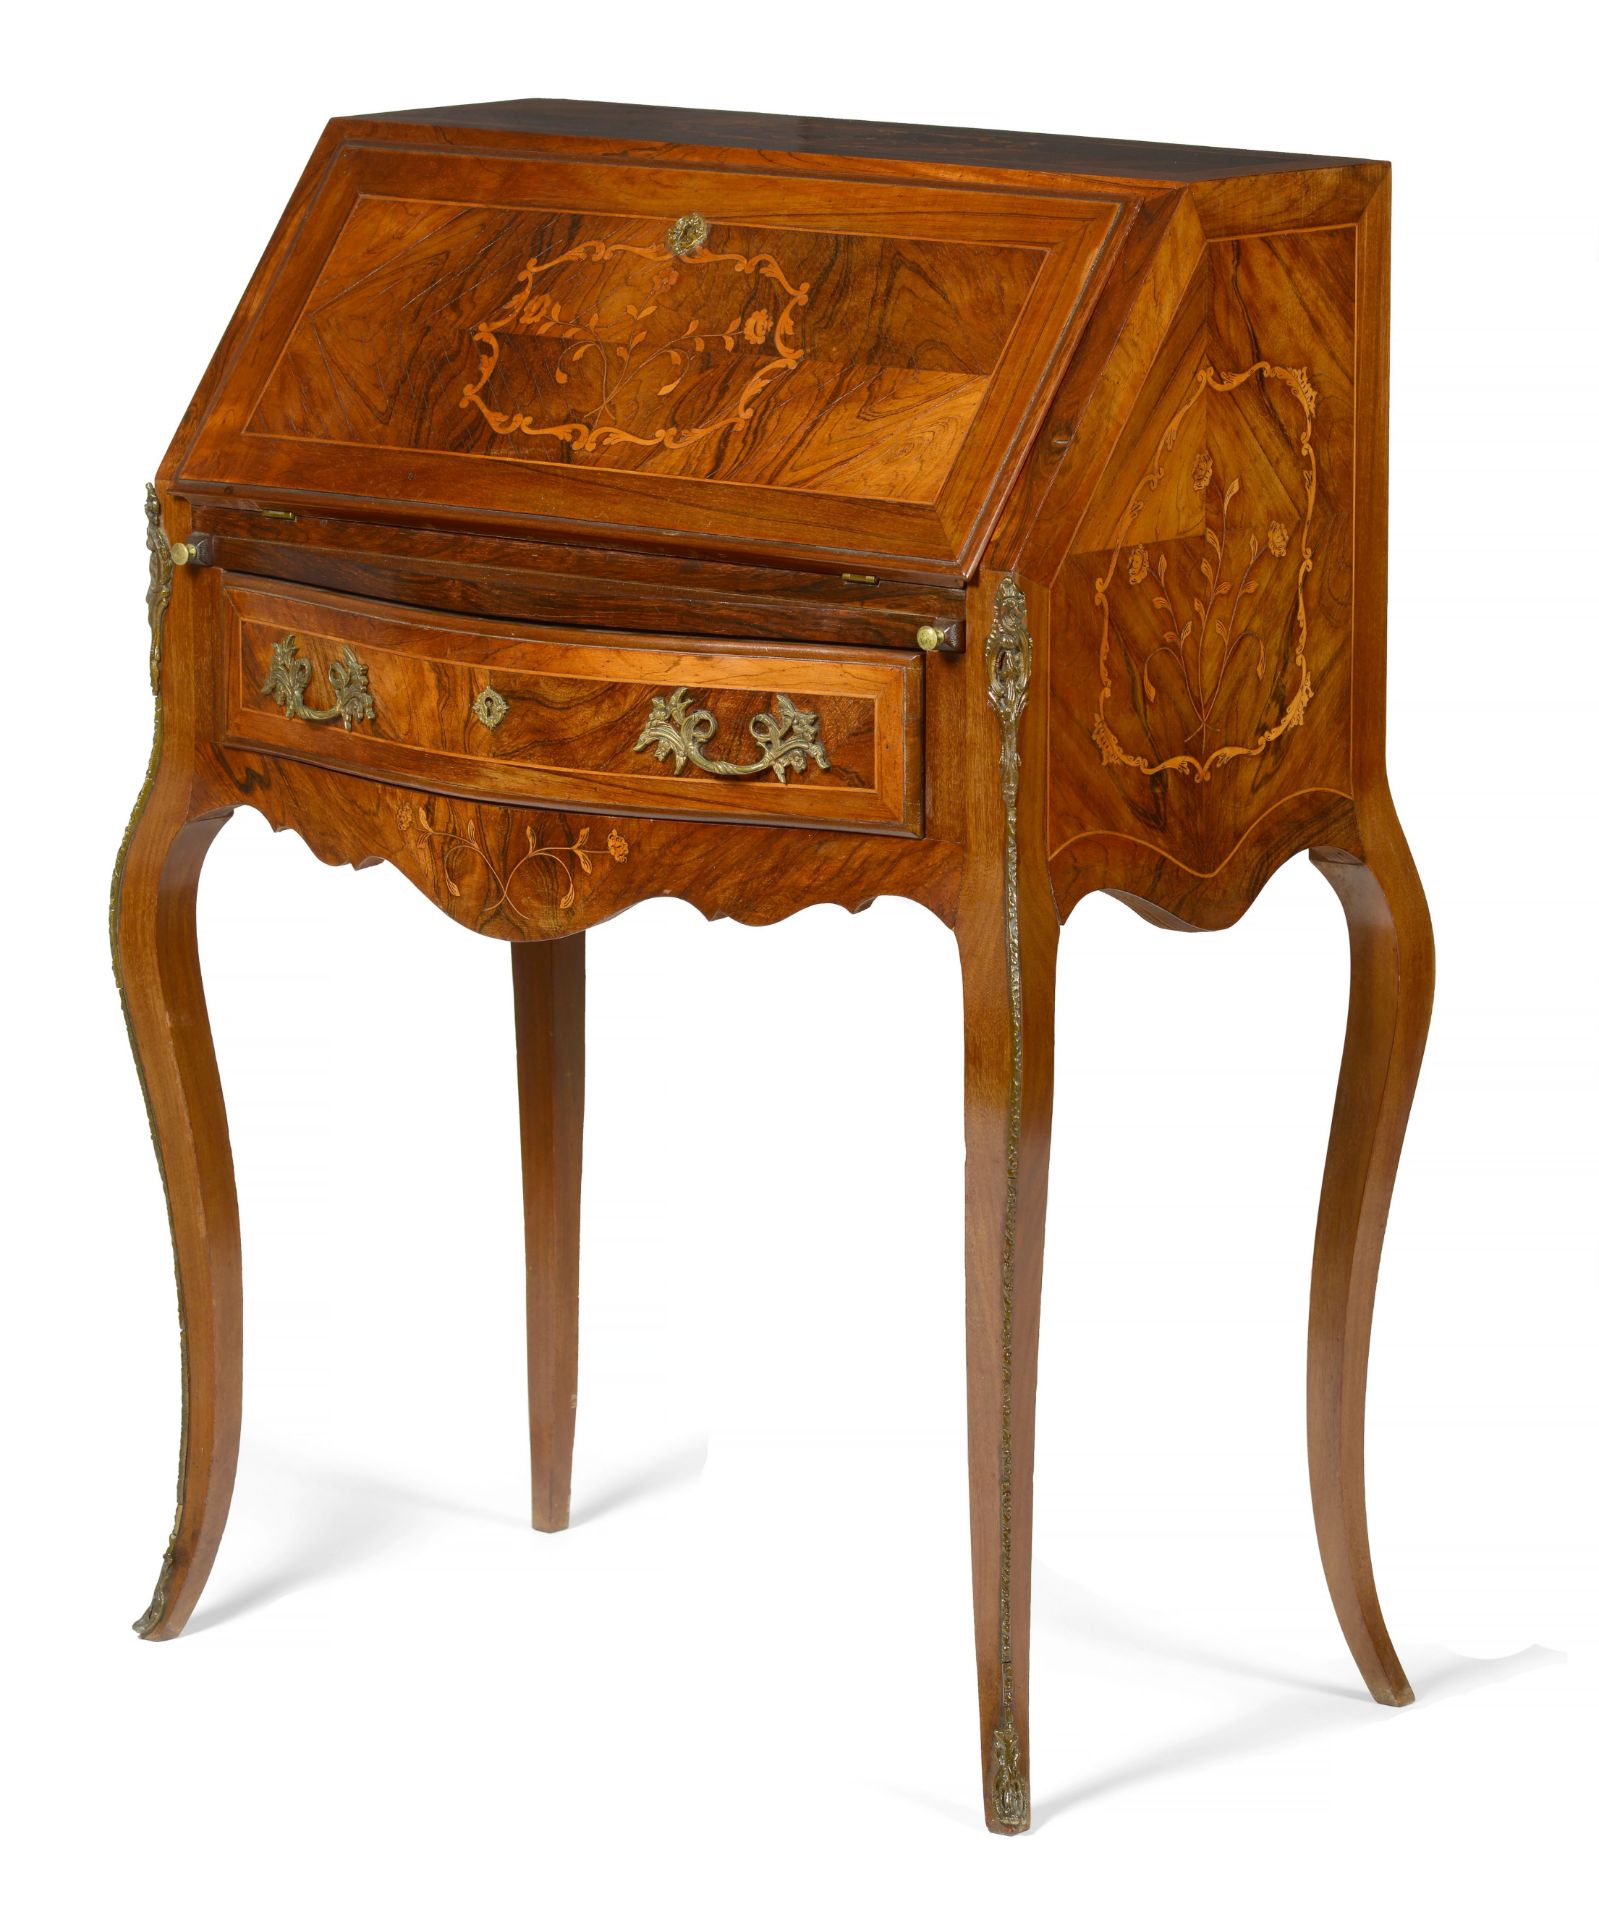 A Louis XV style lady's desk